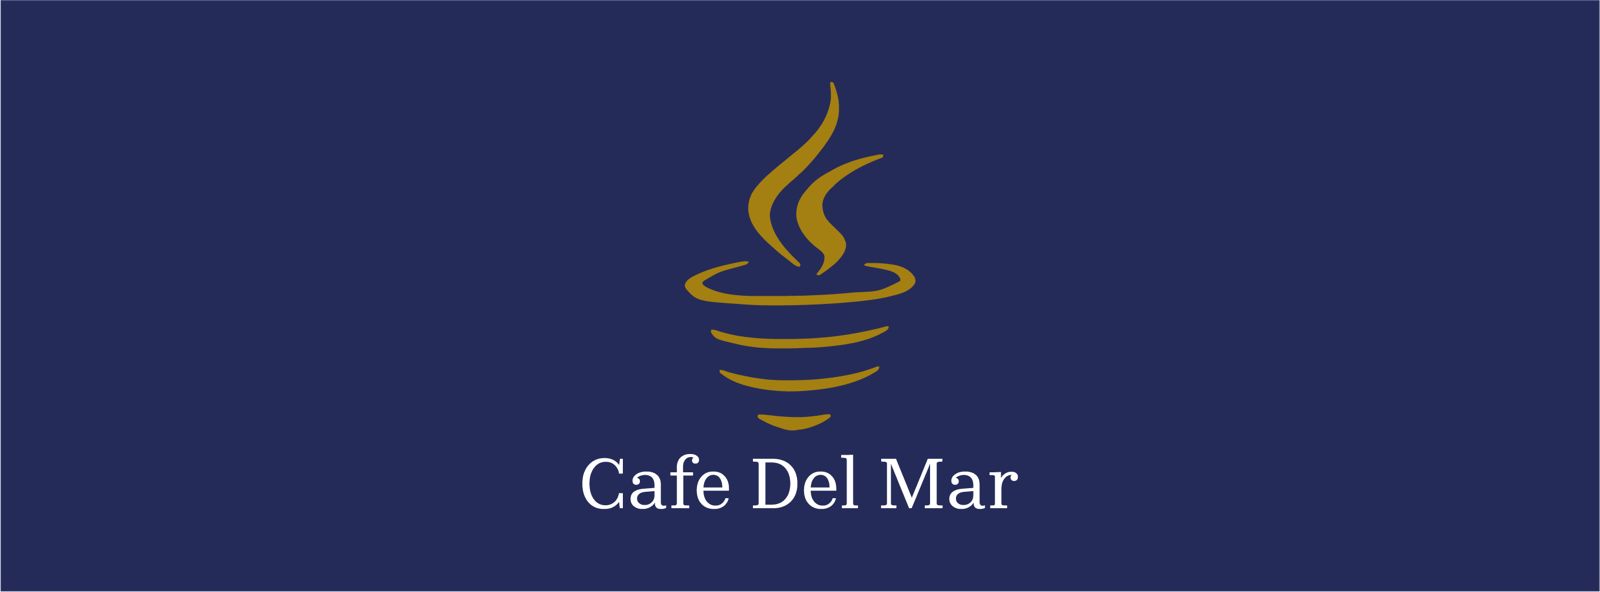 Логотип Cafe Del Mar